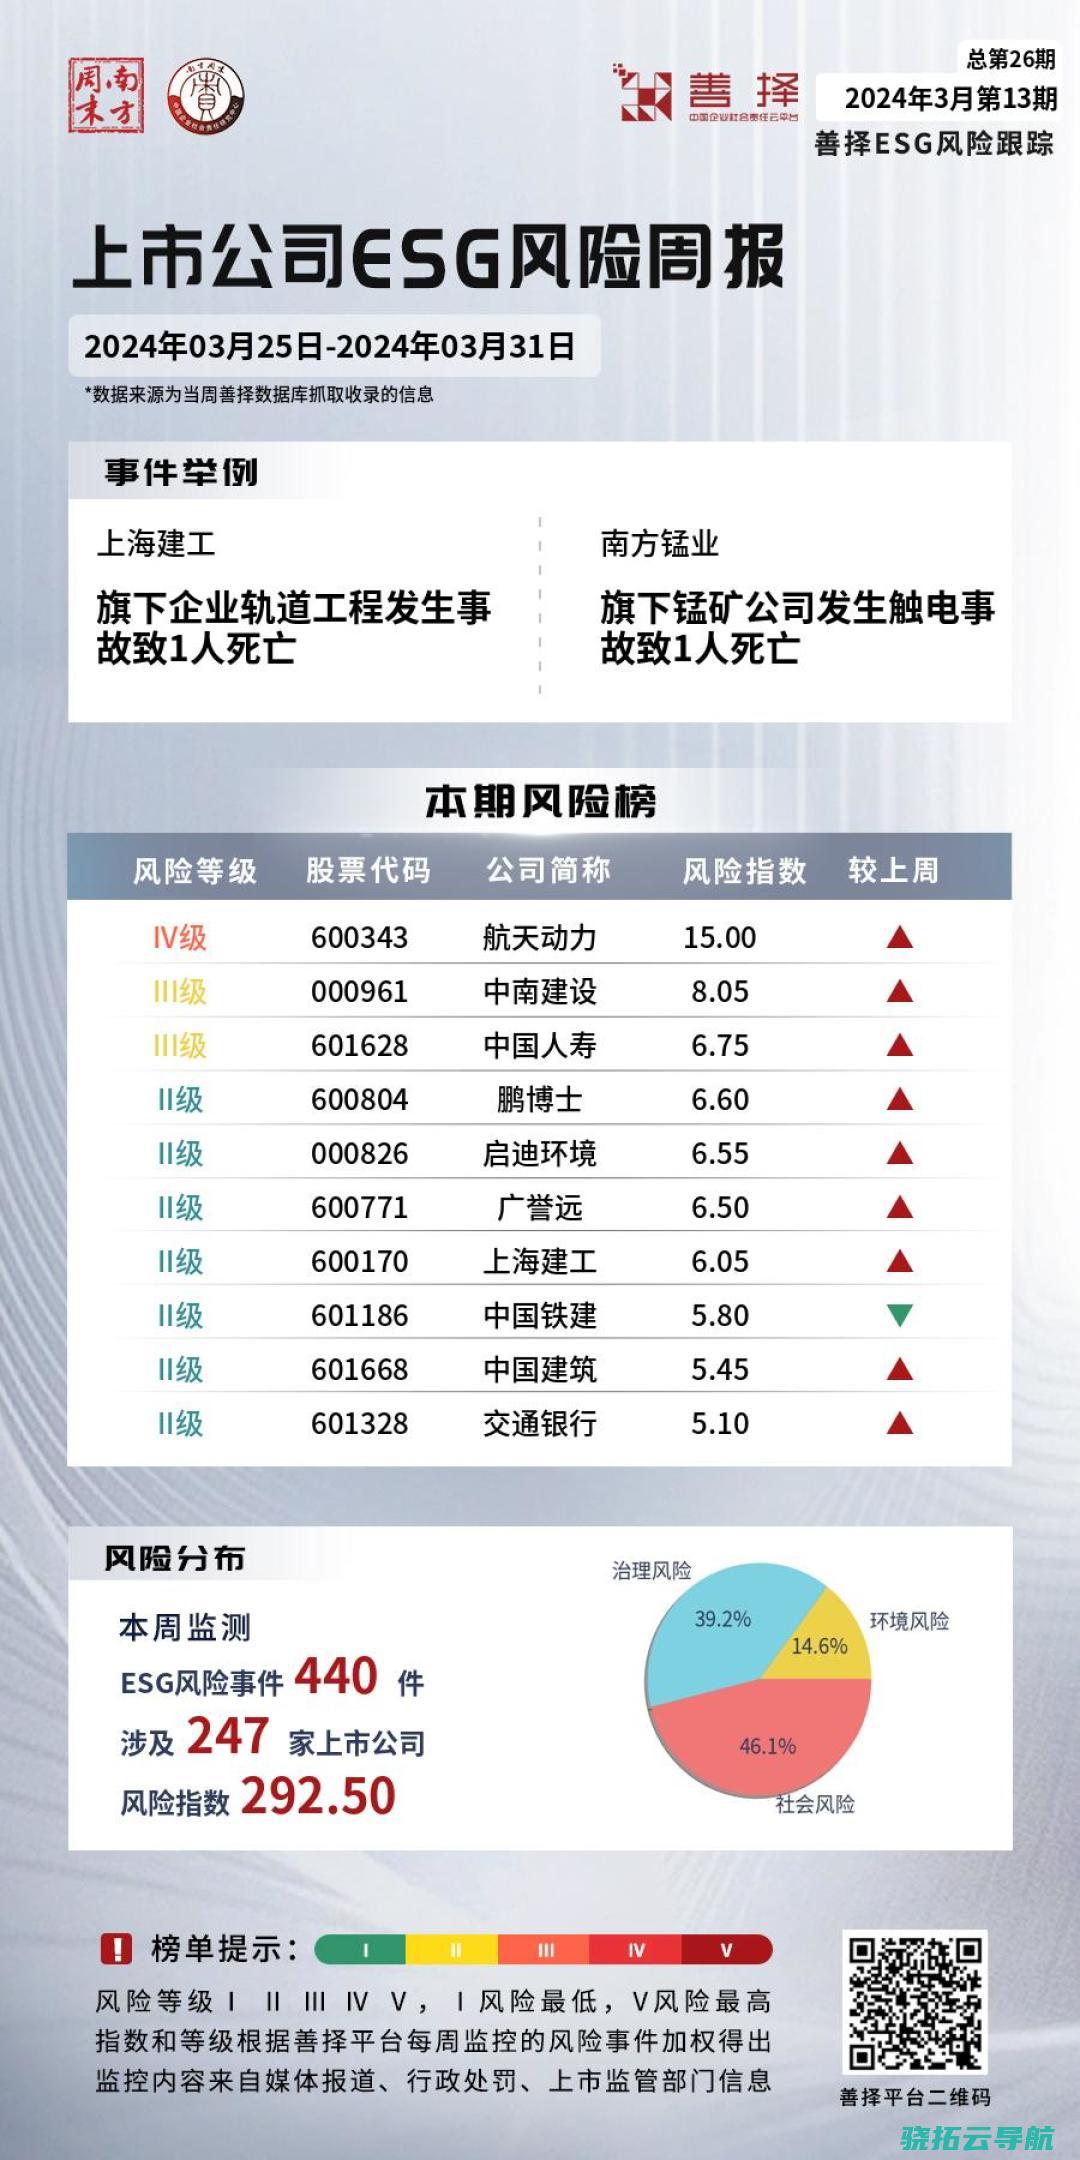 善择ESG危险跟踪第26期 247家公司泄露ESG危险 上海建工旗下企业轨道工程出现意外致1人死亡